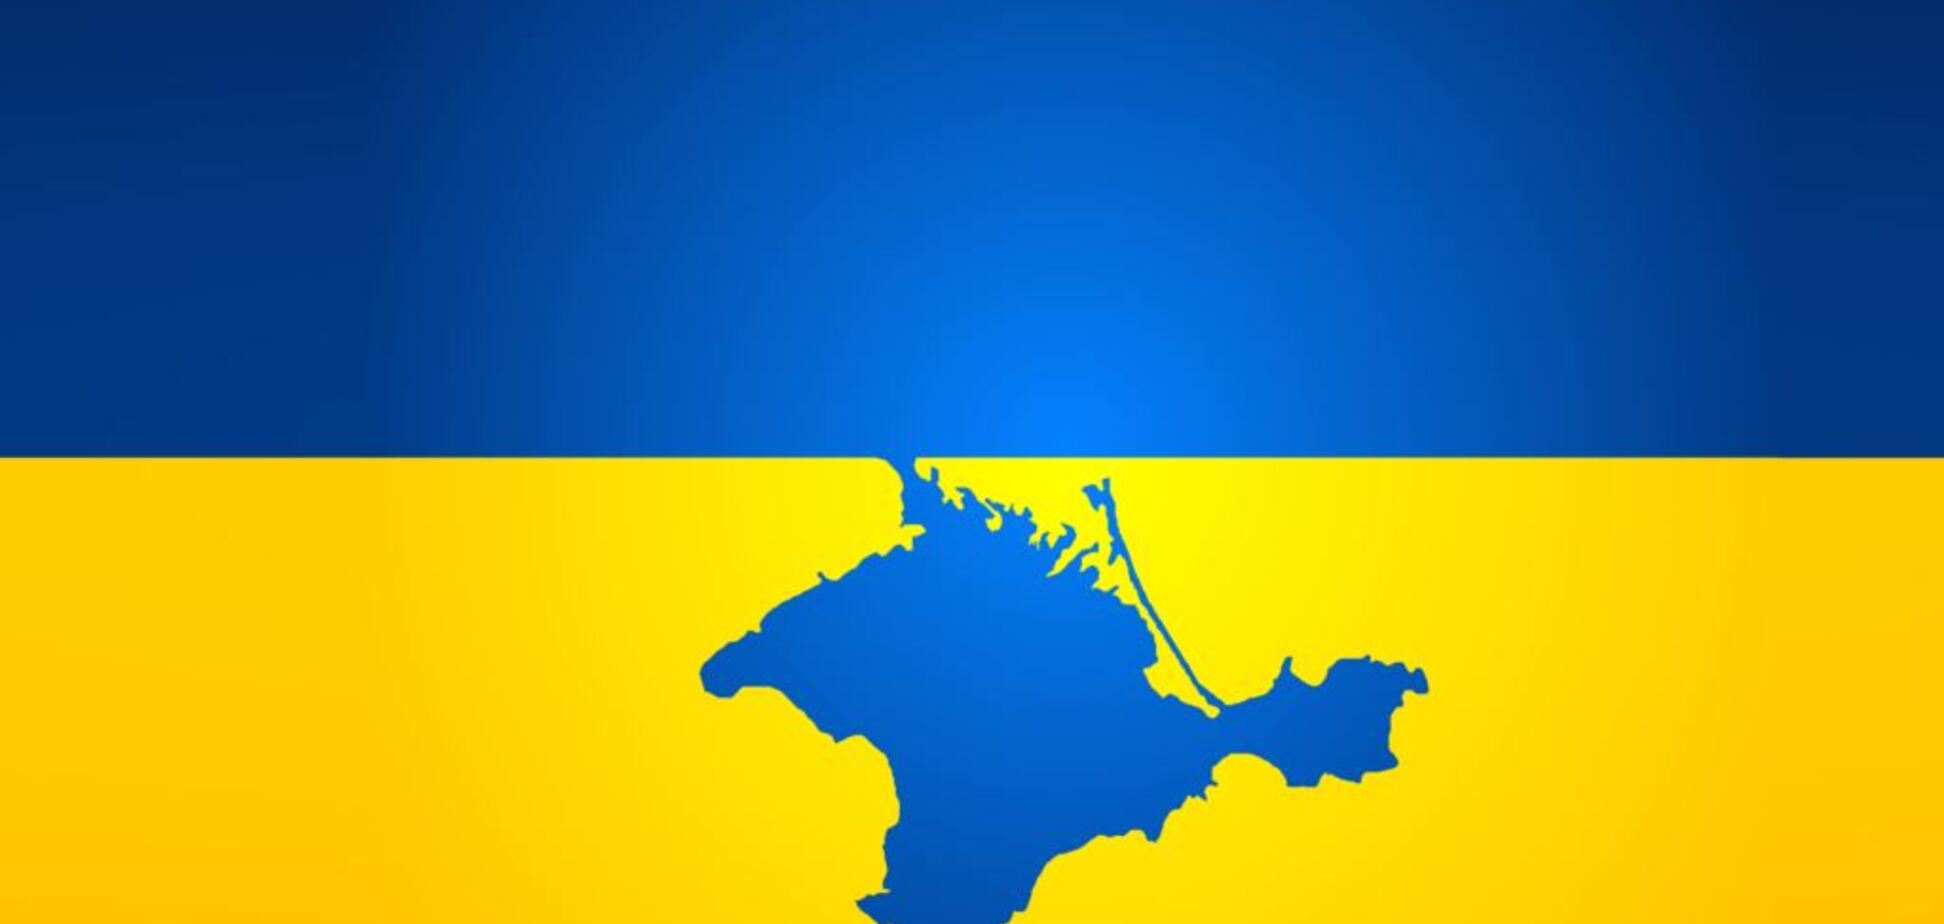 Скандал с картой Украины без Крыма и Донбасса: стала известна развязка